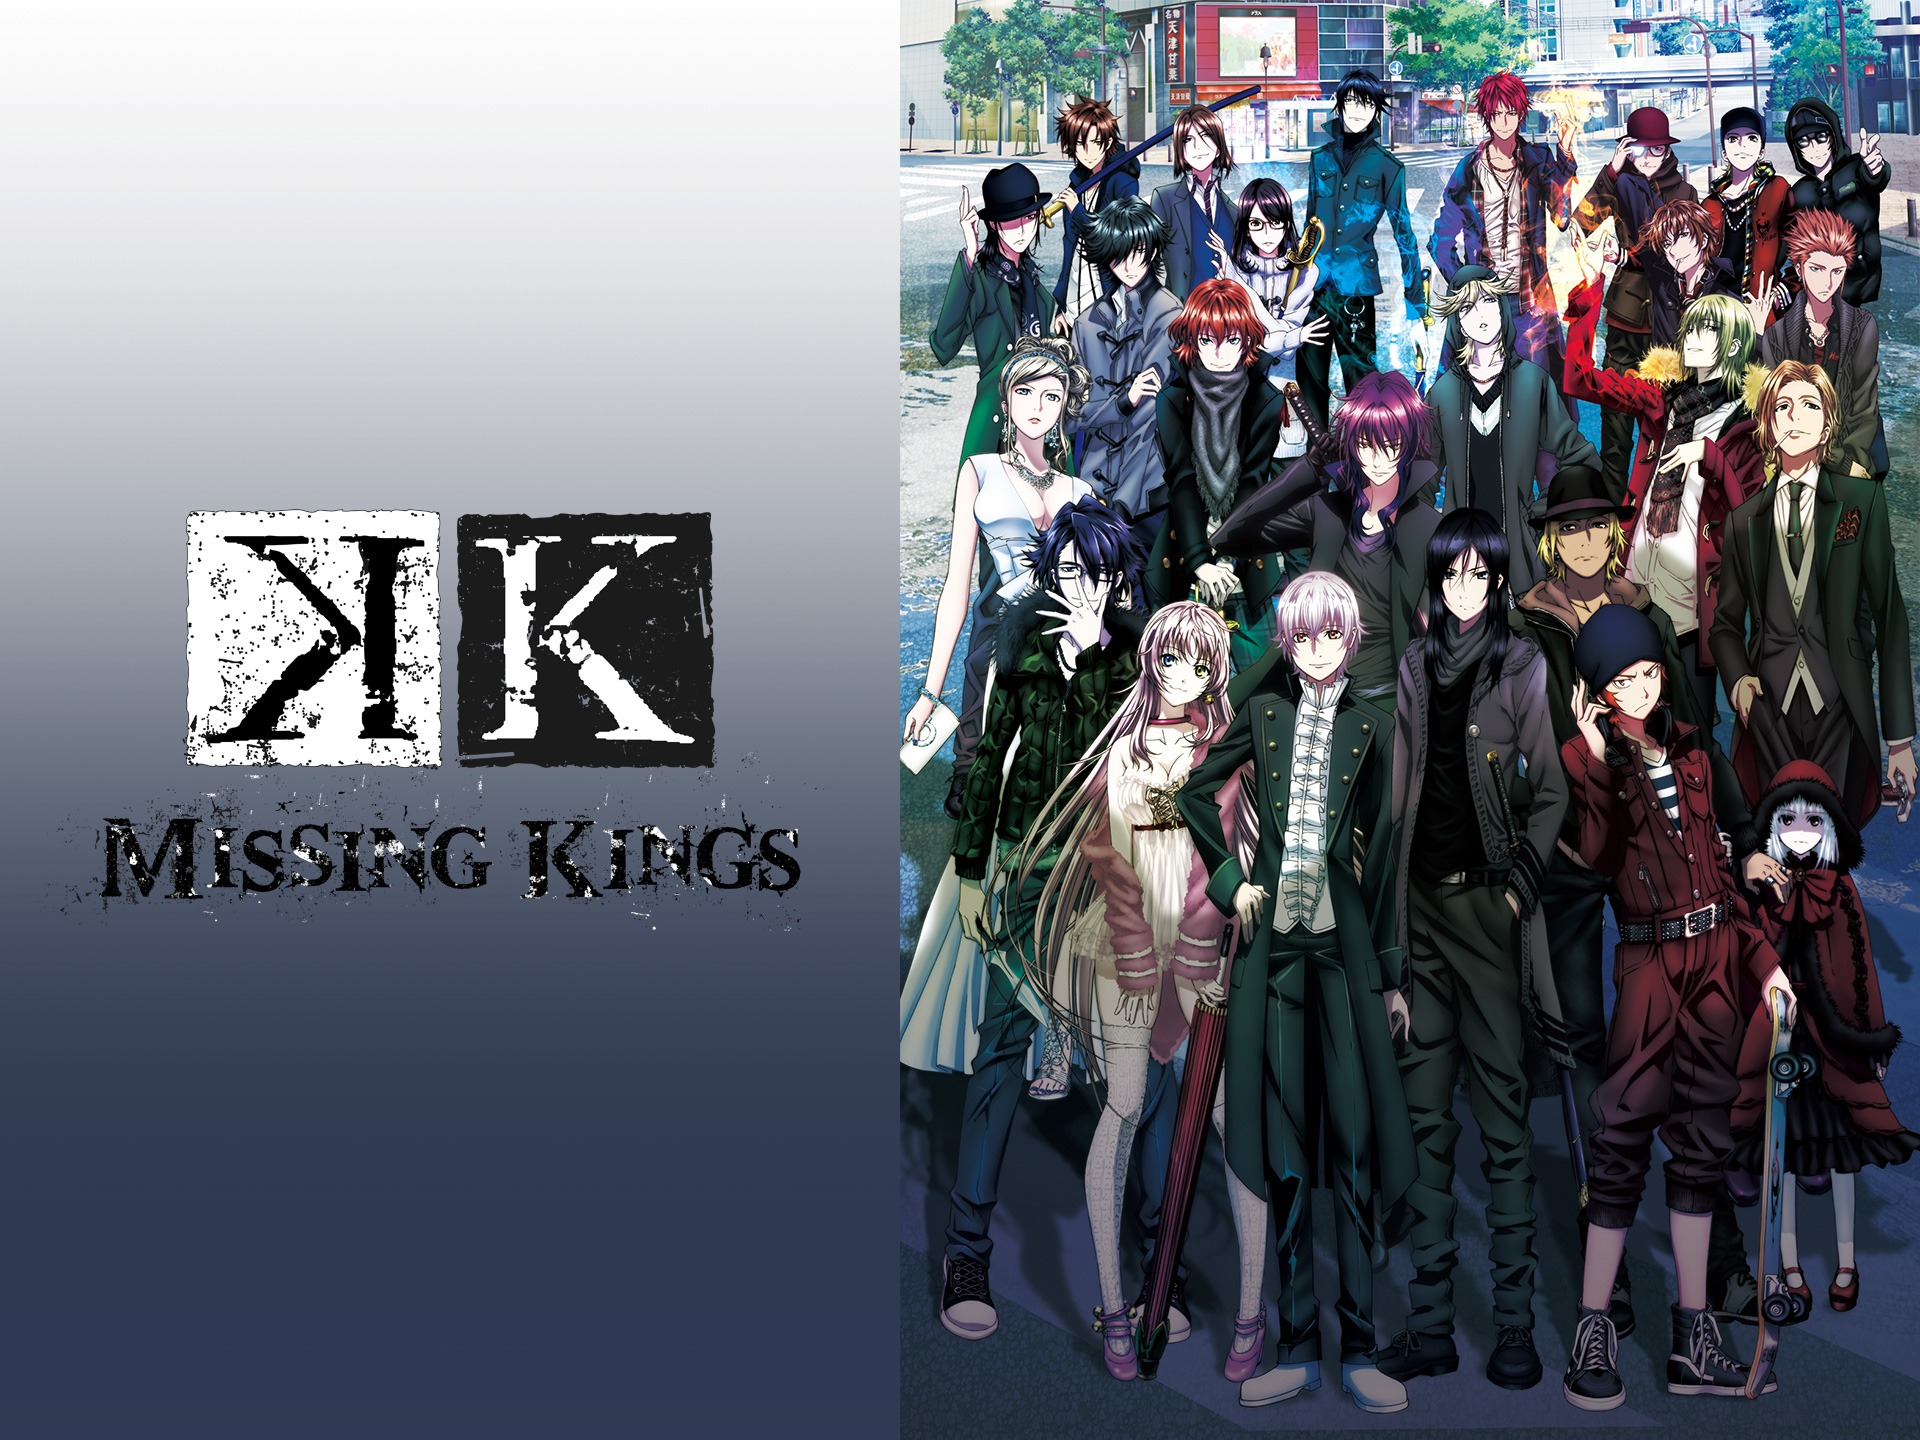 アニメ 劇場版 K Missing Kings の動画 初月無料 動画配信サービスのビデオマーケット